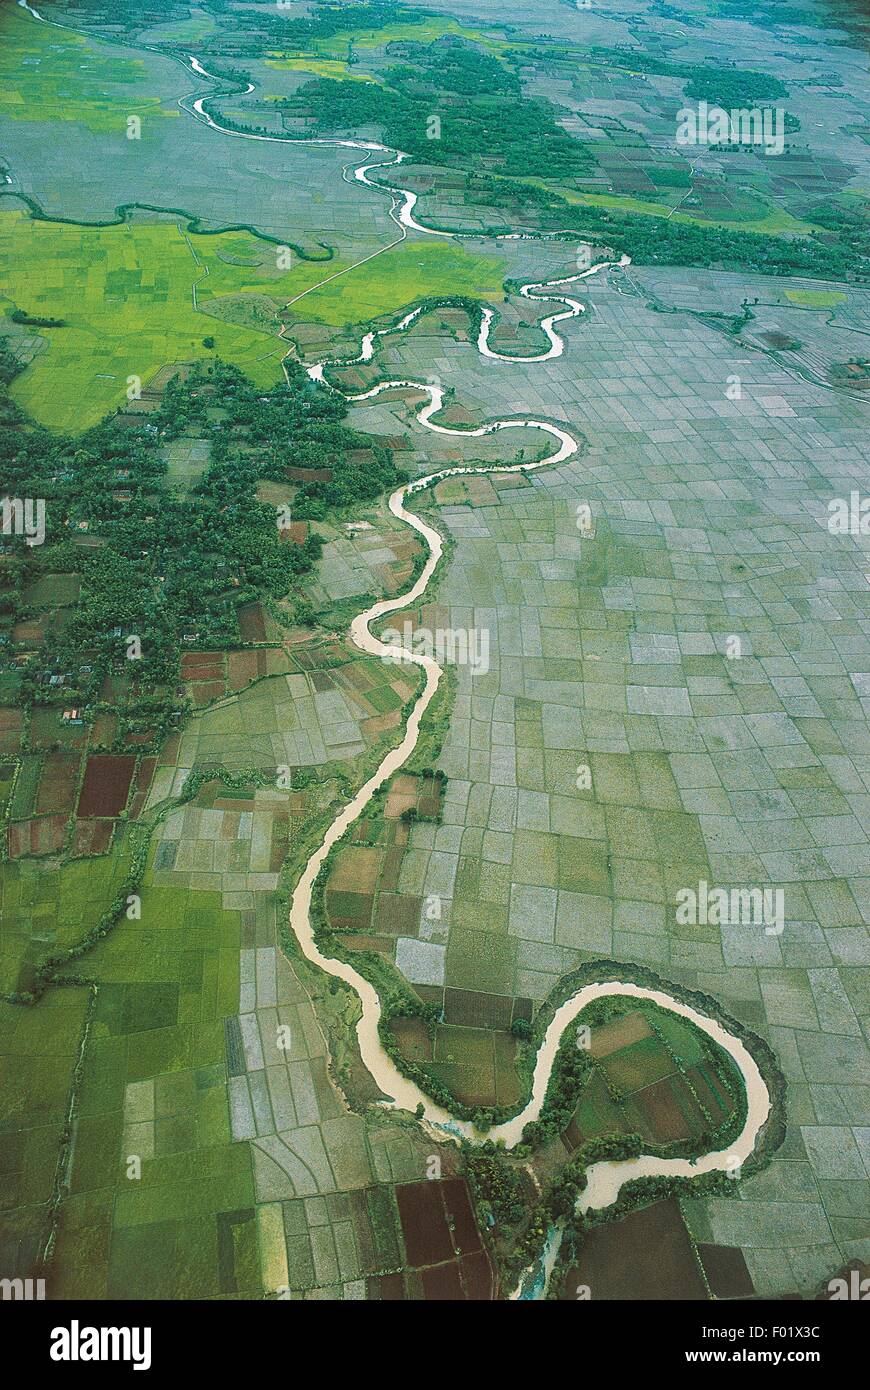 Luftaufnahme des Ciliwung-Flusses in der Umgebung von Jakarta - Insel Java, Indonesien Stockfoto